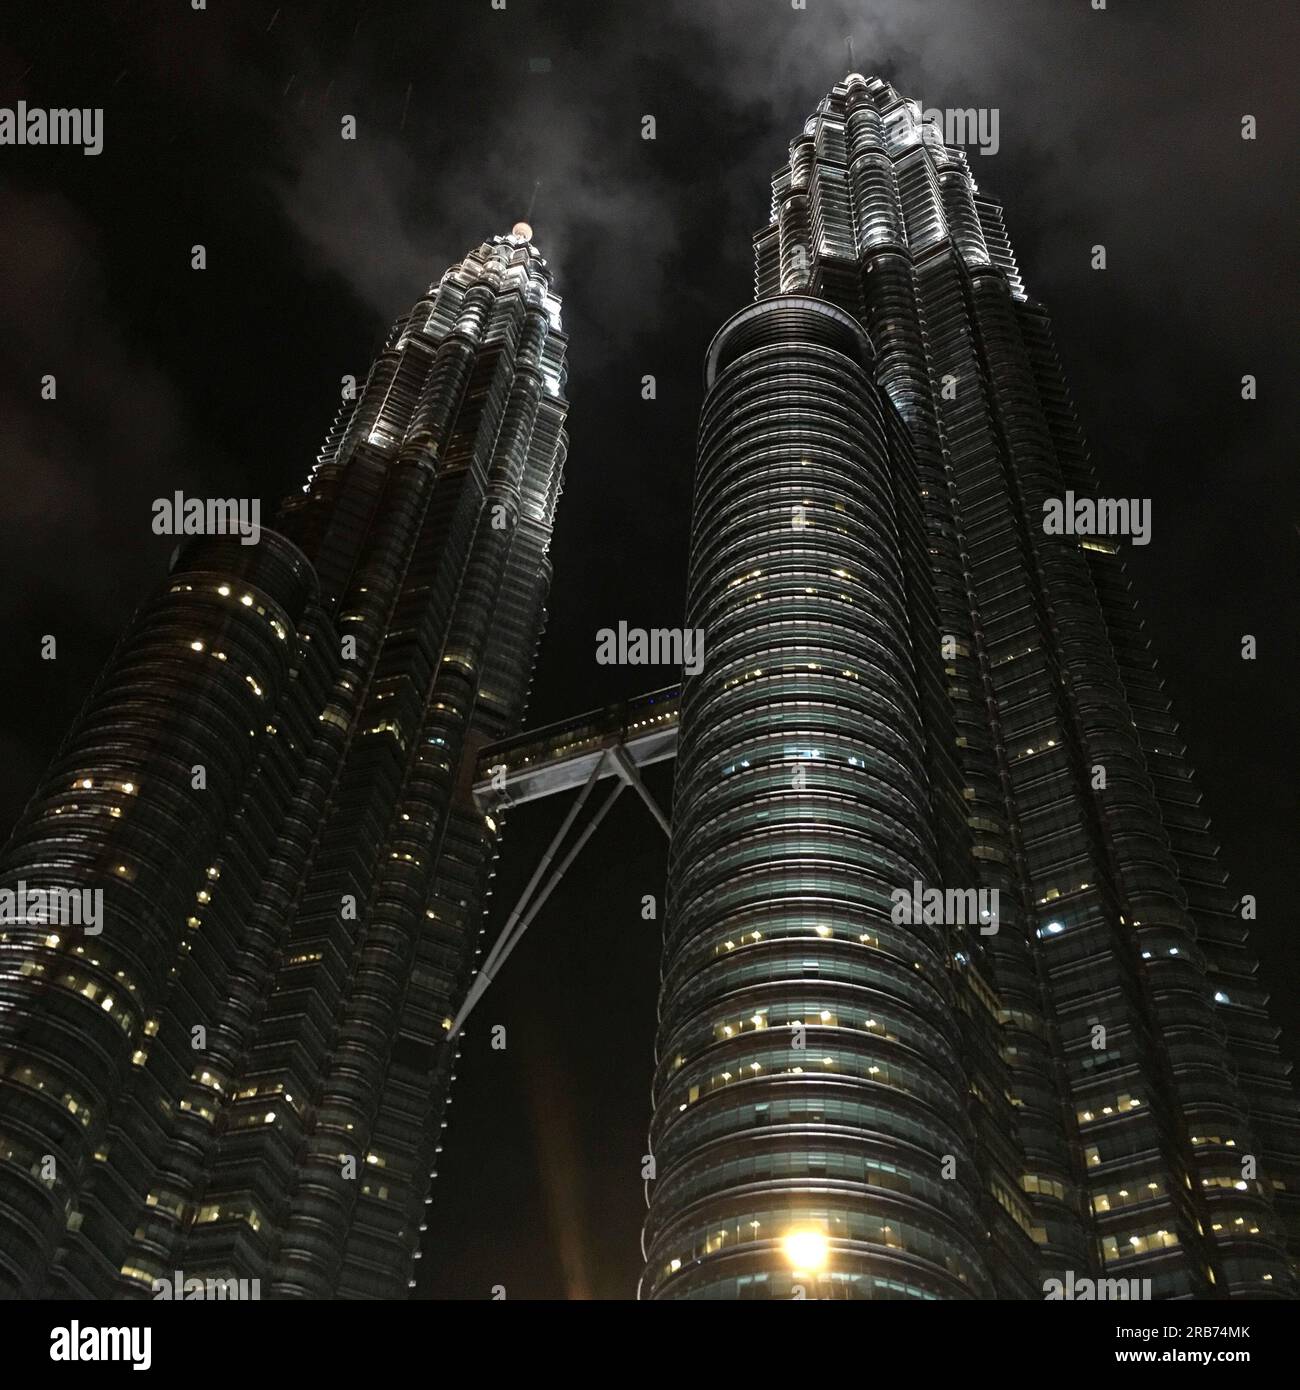 Petronas Twin Tower Kuala Lumpur, Malesia / Torres gemelas Petronas Kuala Lumpur, Malasia / 马来西亚国家石油公司双子塔 吉隆坡 Foto Stock